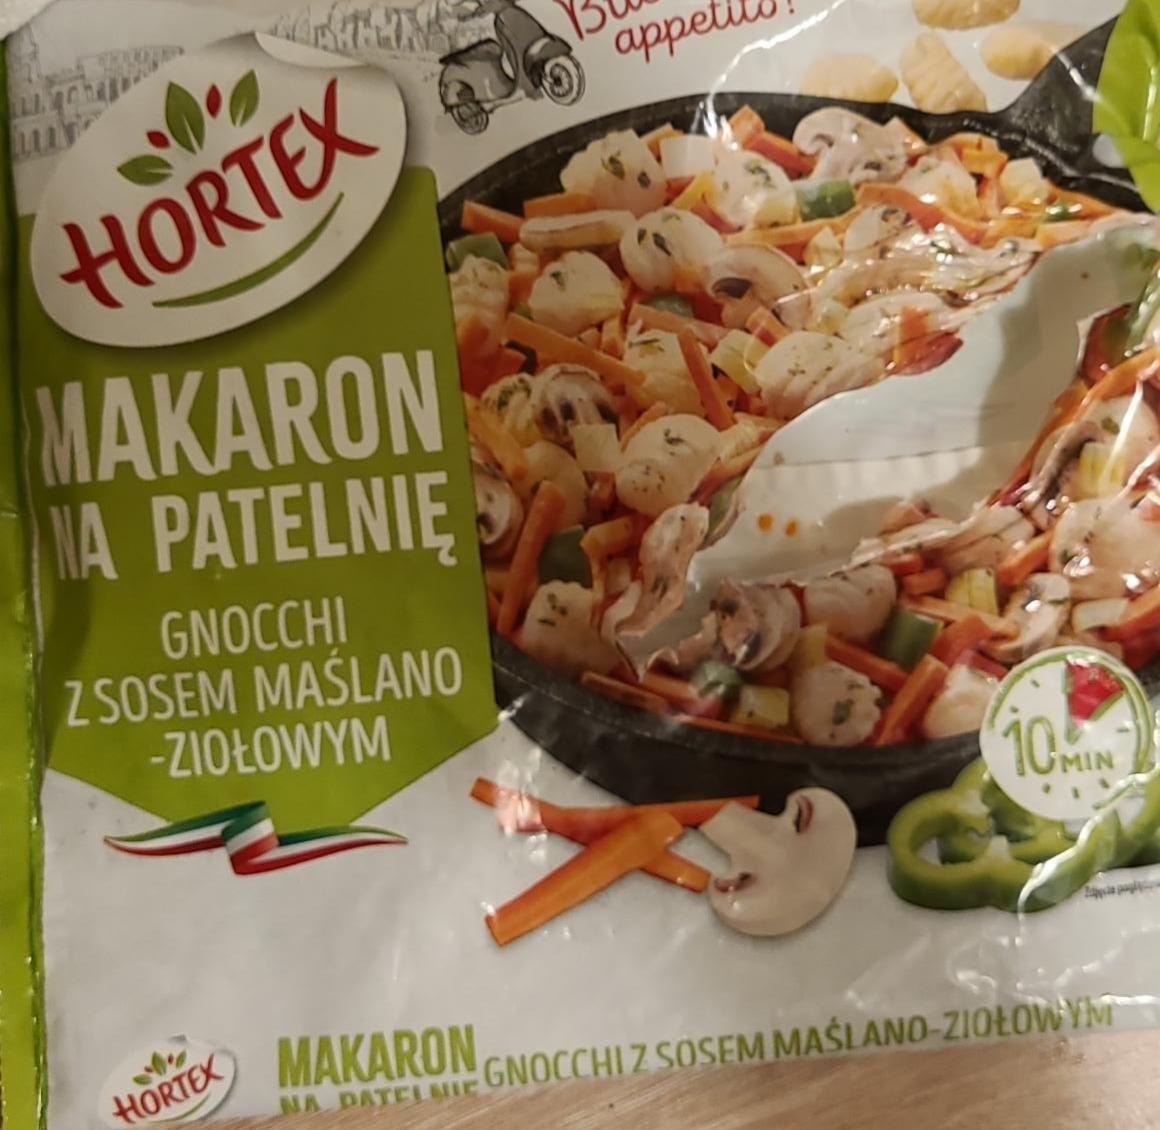 Zdjęcia - Makaron na patelnię gnocchi z sosem maślano-ziołowym Hortex